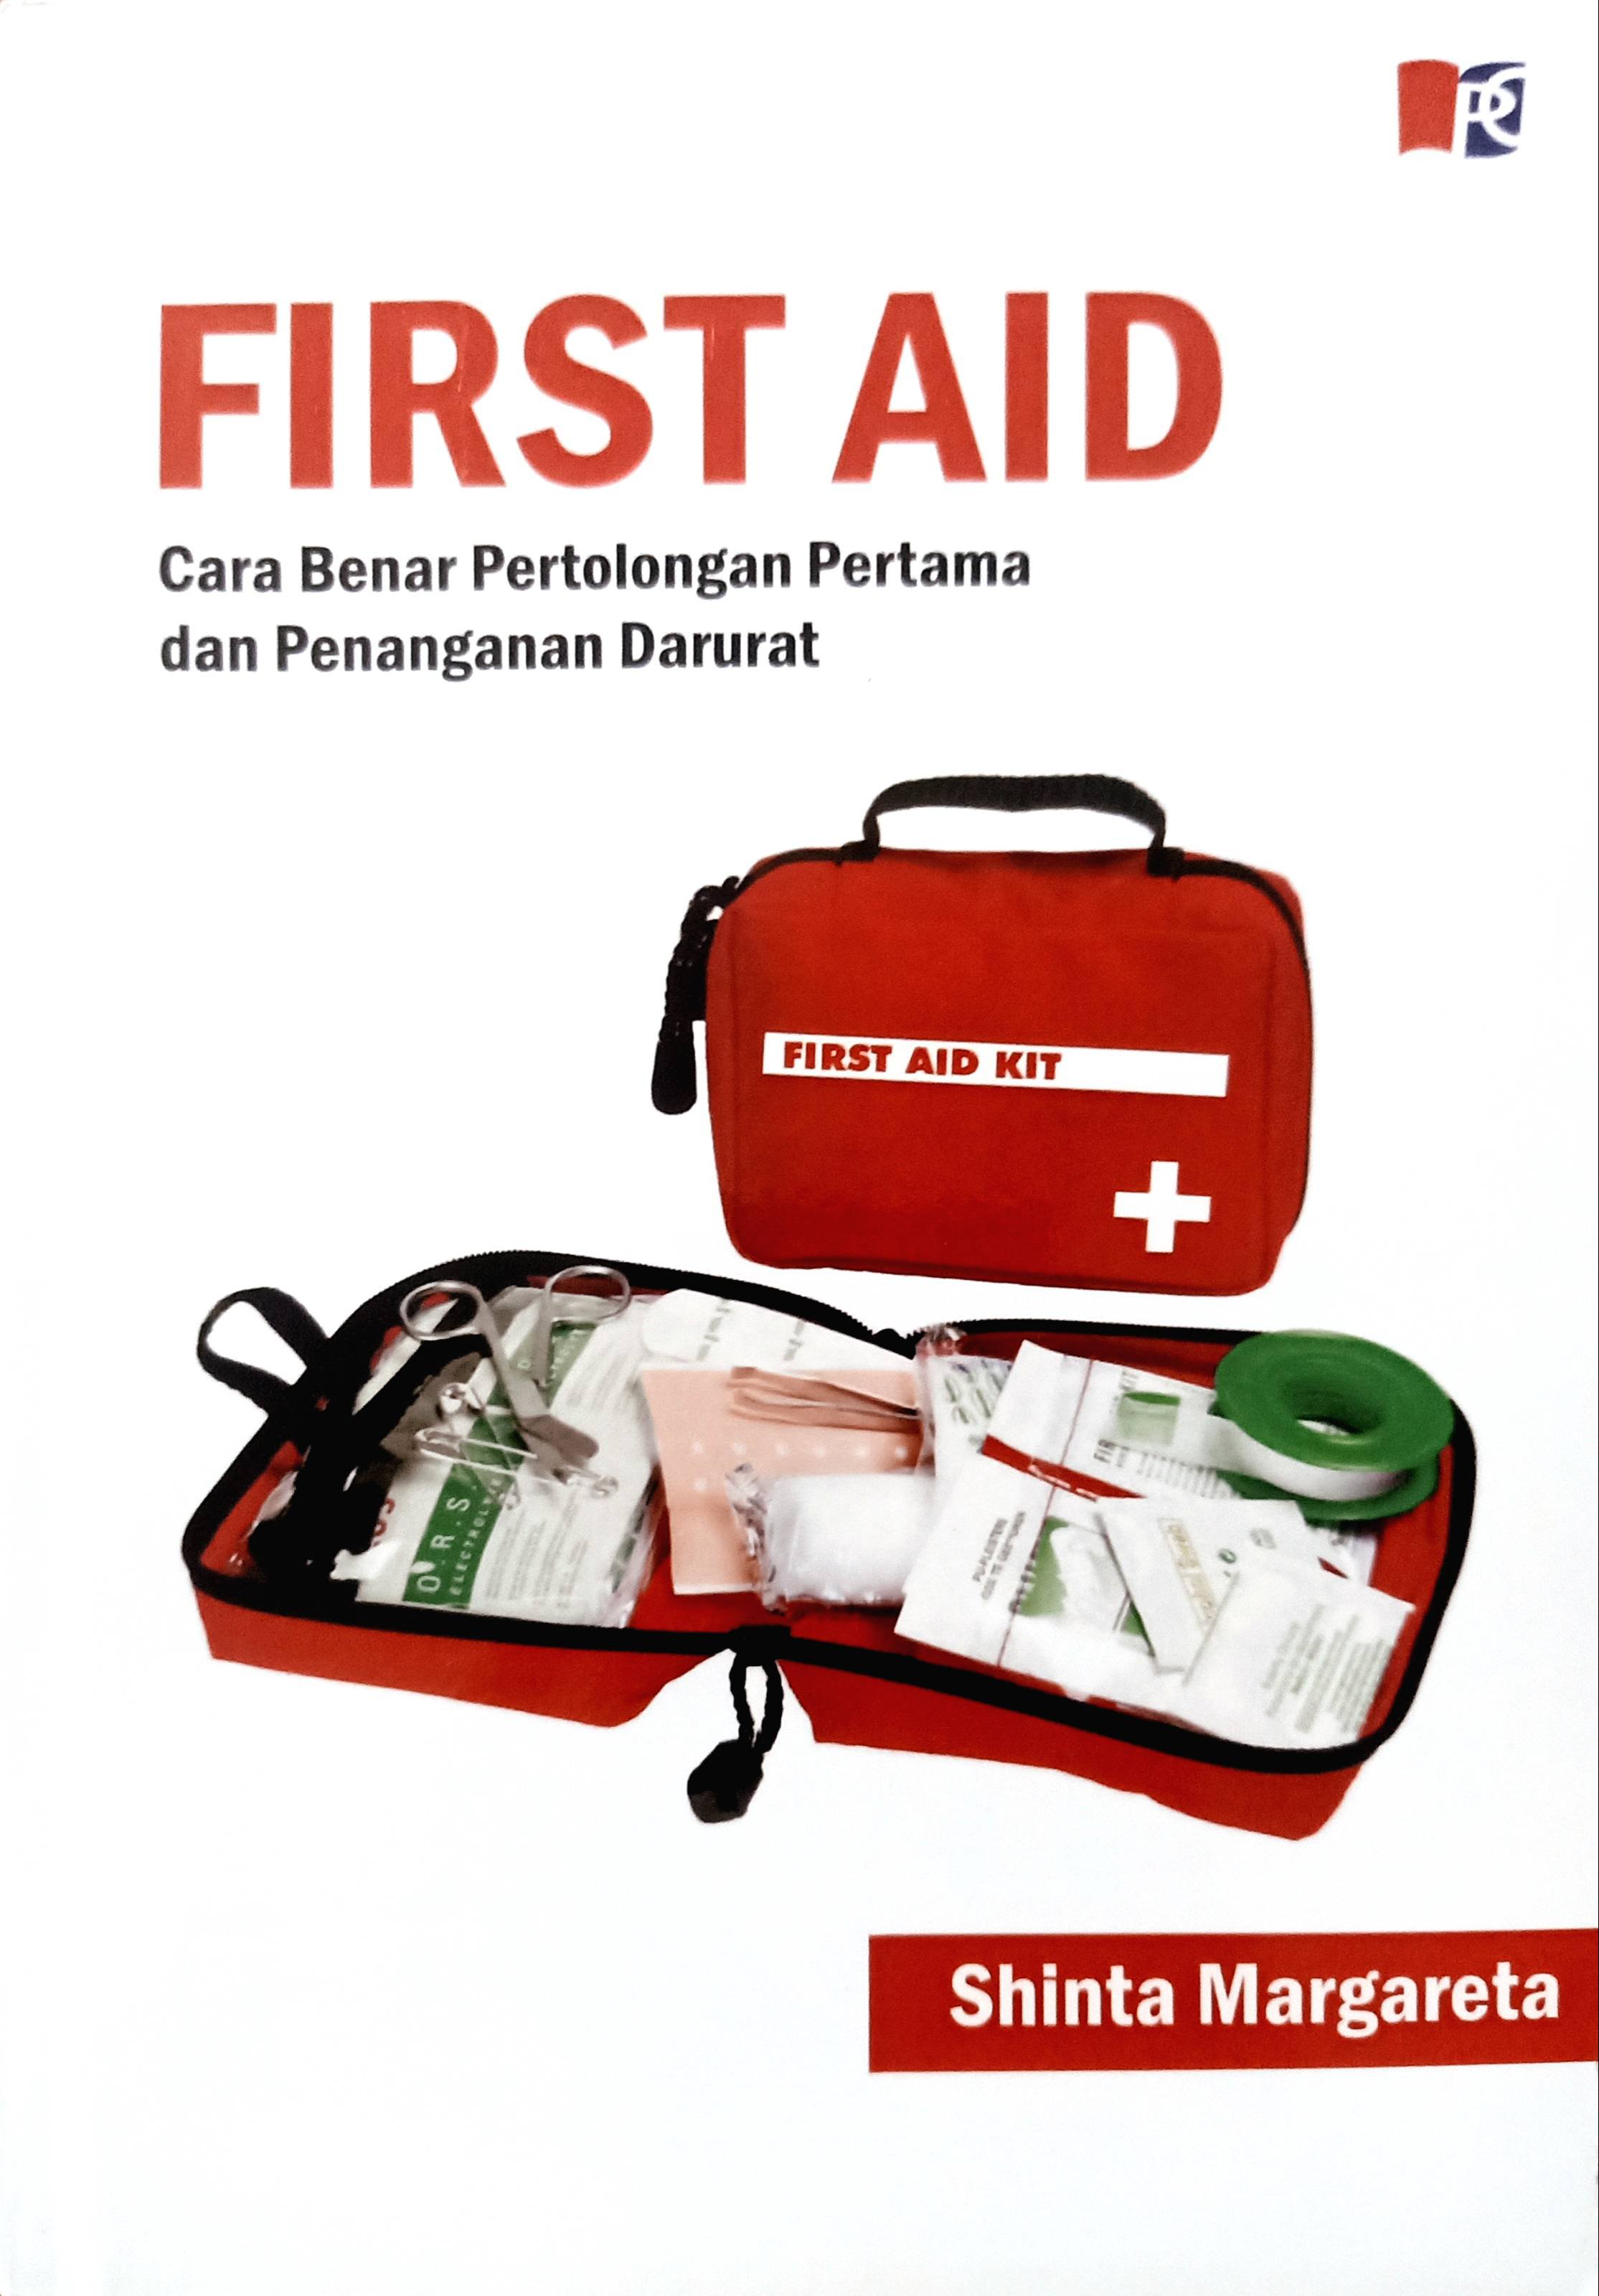 First aid : cara benar pertolongan pertama dan penanganan darurat